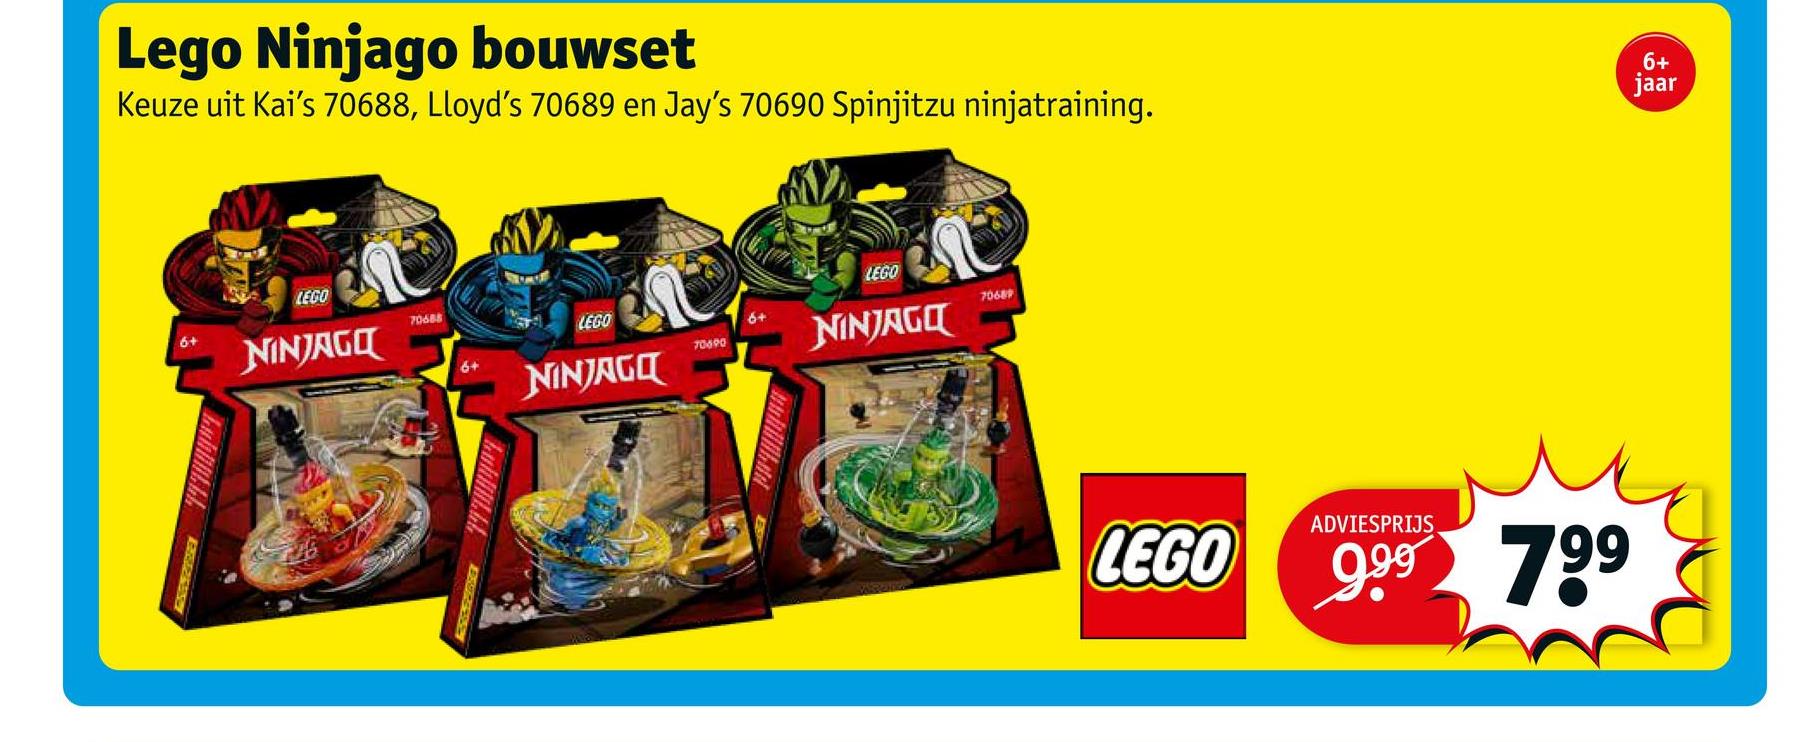 Lego Ninjago bouwset
Keuze uit Kai's 70688, Lloyd's 70689 en Jay's 70690 Spinjitzu ninjatraining.
LEGO
LEGO
6+
70688
NINJAGO
LEGO
70689
70690
NINJAGO
NINJAGO
Lublik IZENE
6+
wwbilikud
LEGO
6+
jaar
ADVIESPRIJS
9.9⁹ 799